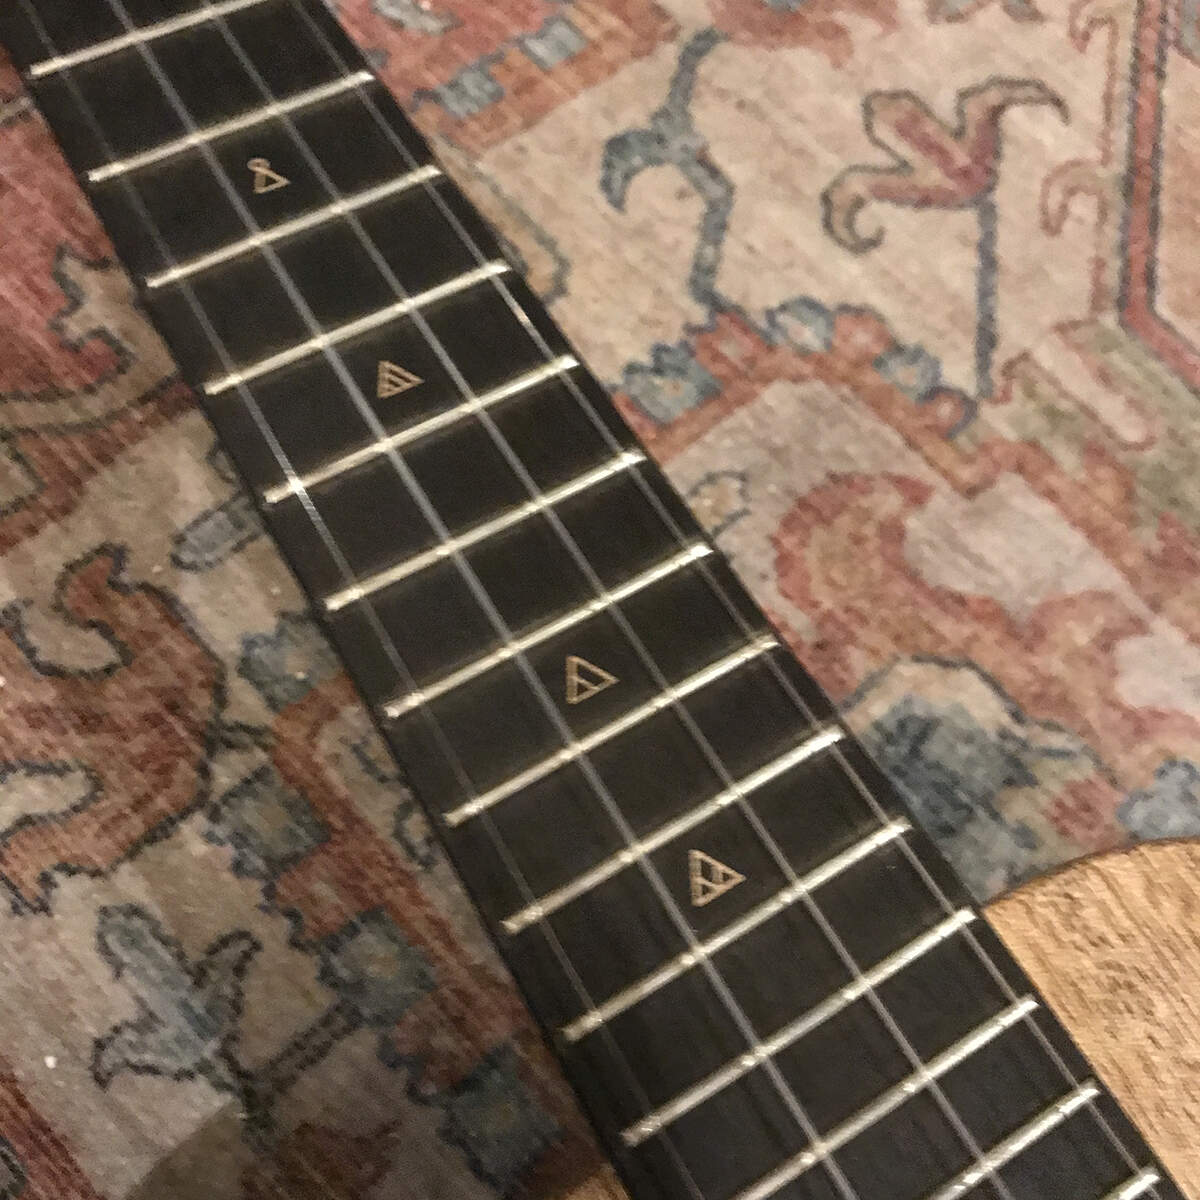 The Rebel ukulele Concert mat